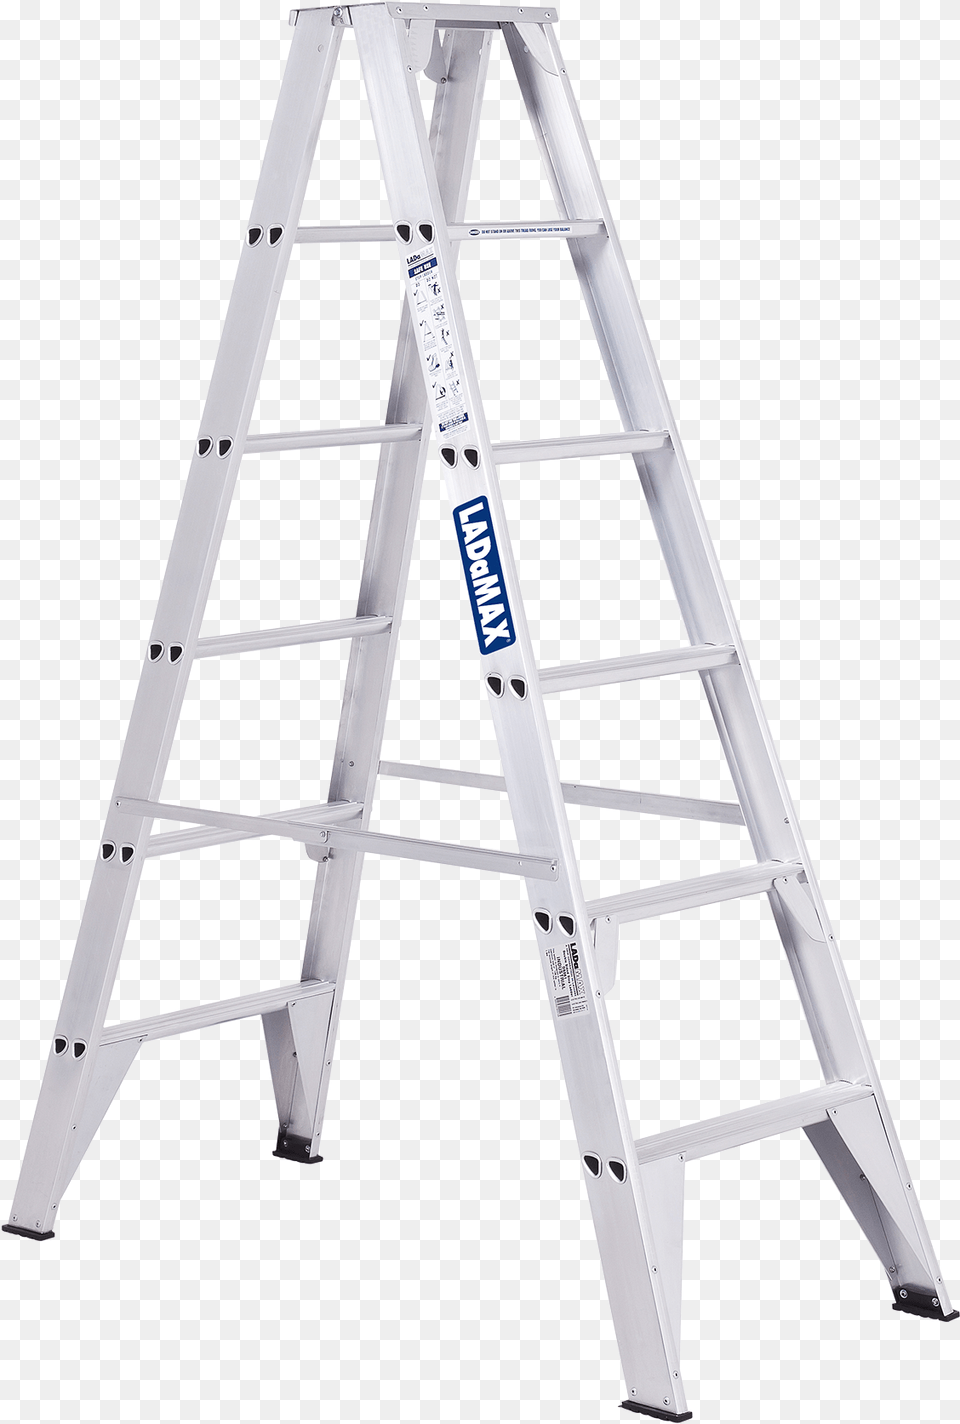 Ladder File Ladder Png Image